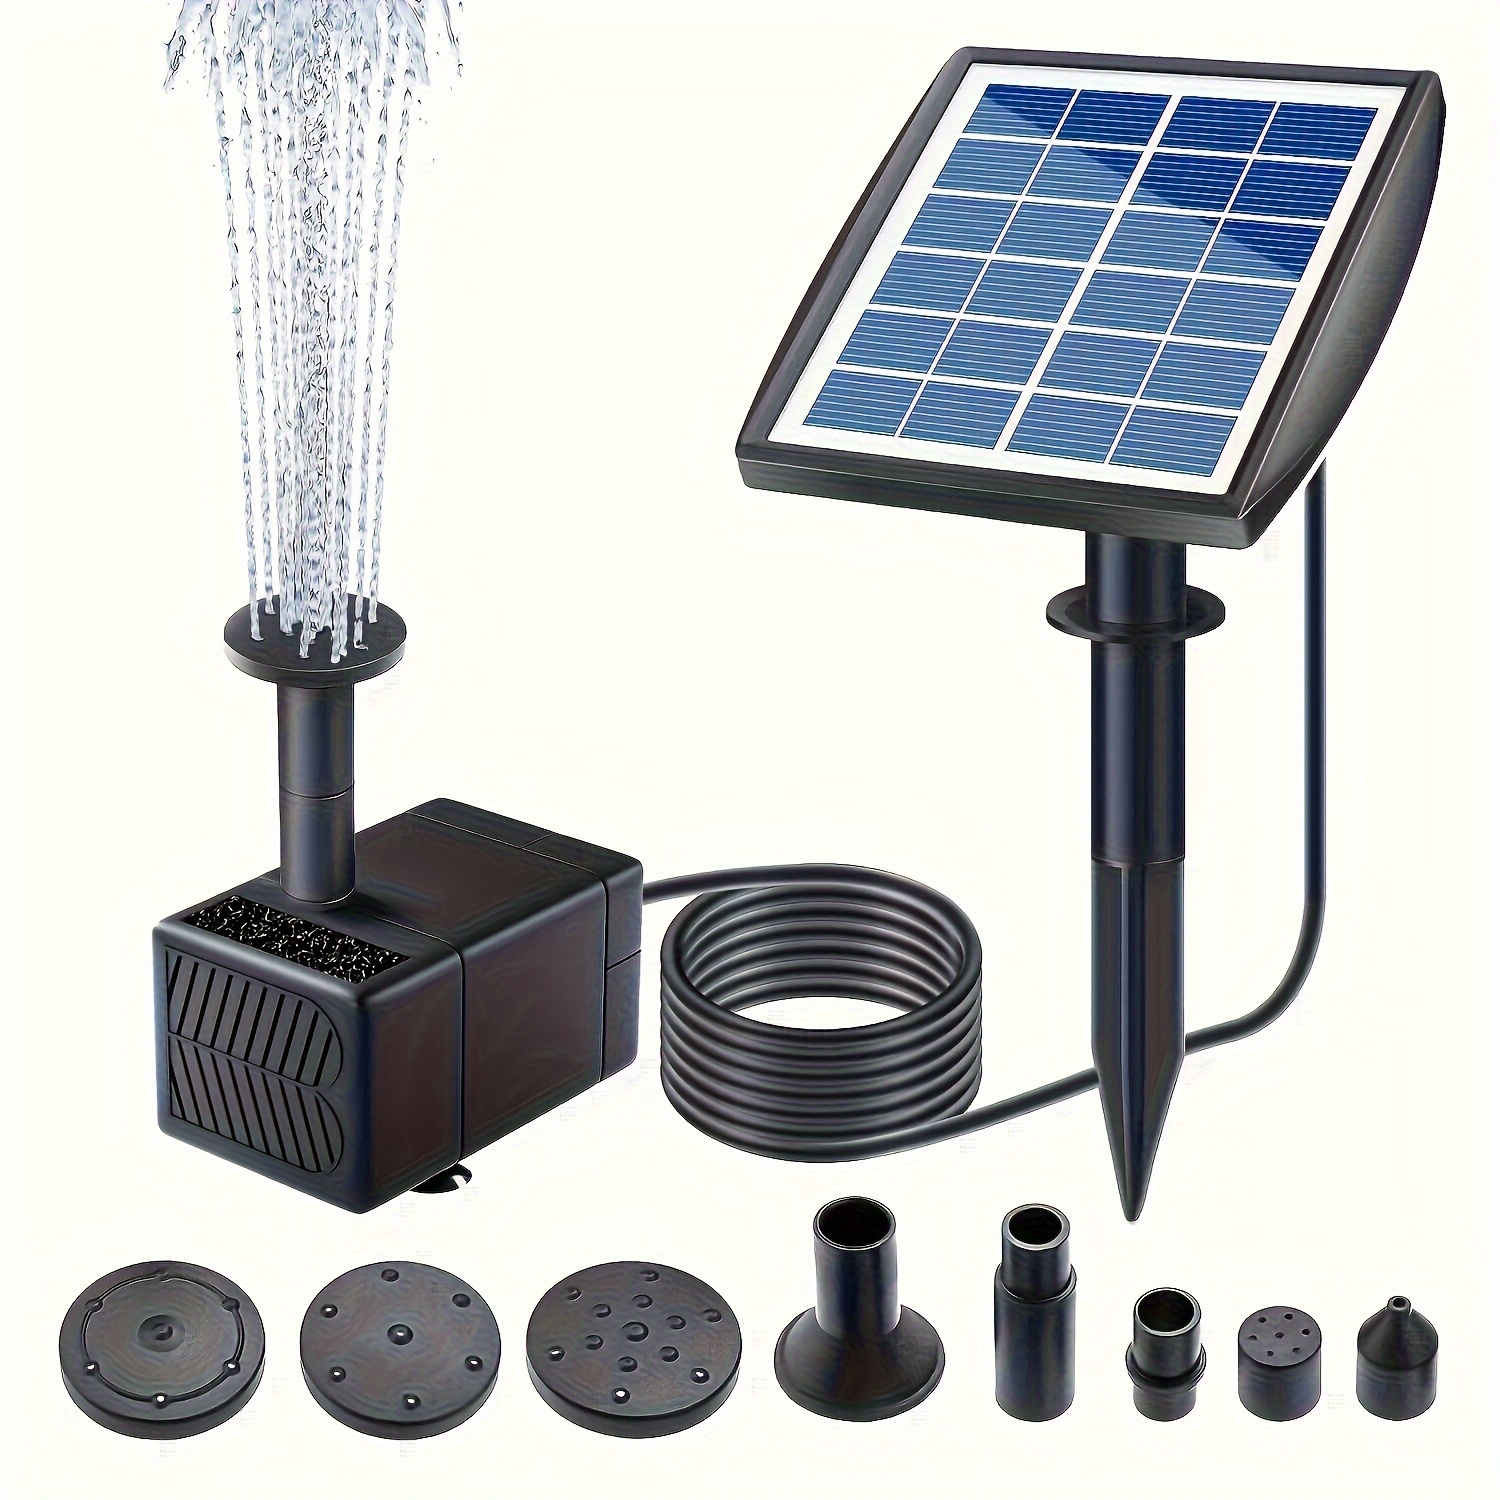 AISITIN Fuente solar de bricolaje, bomba de fuente de energía solar  mejorada 2023 de 5.5 W con batería de 3000 mAh y kit de baño de pájaros de  3